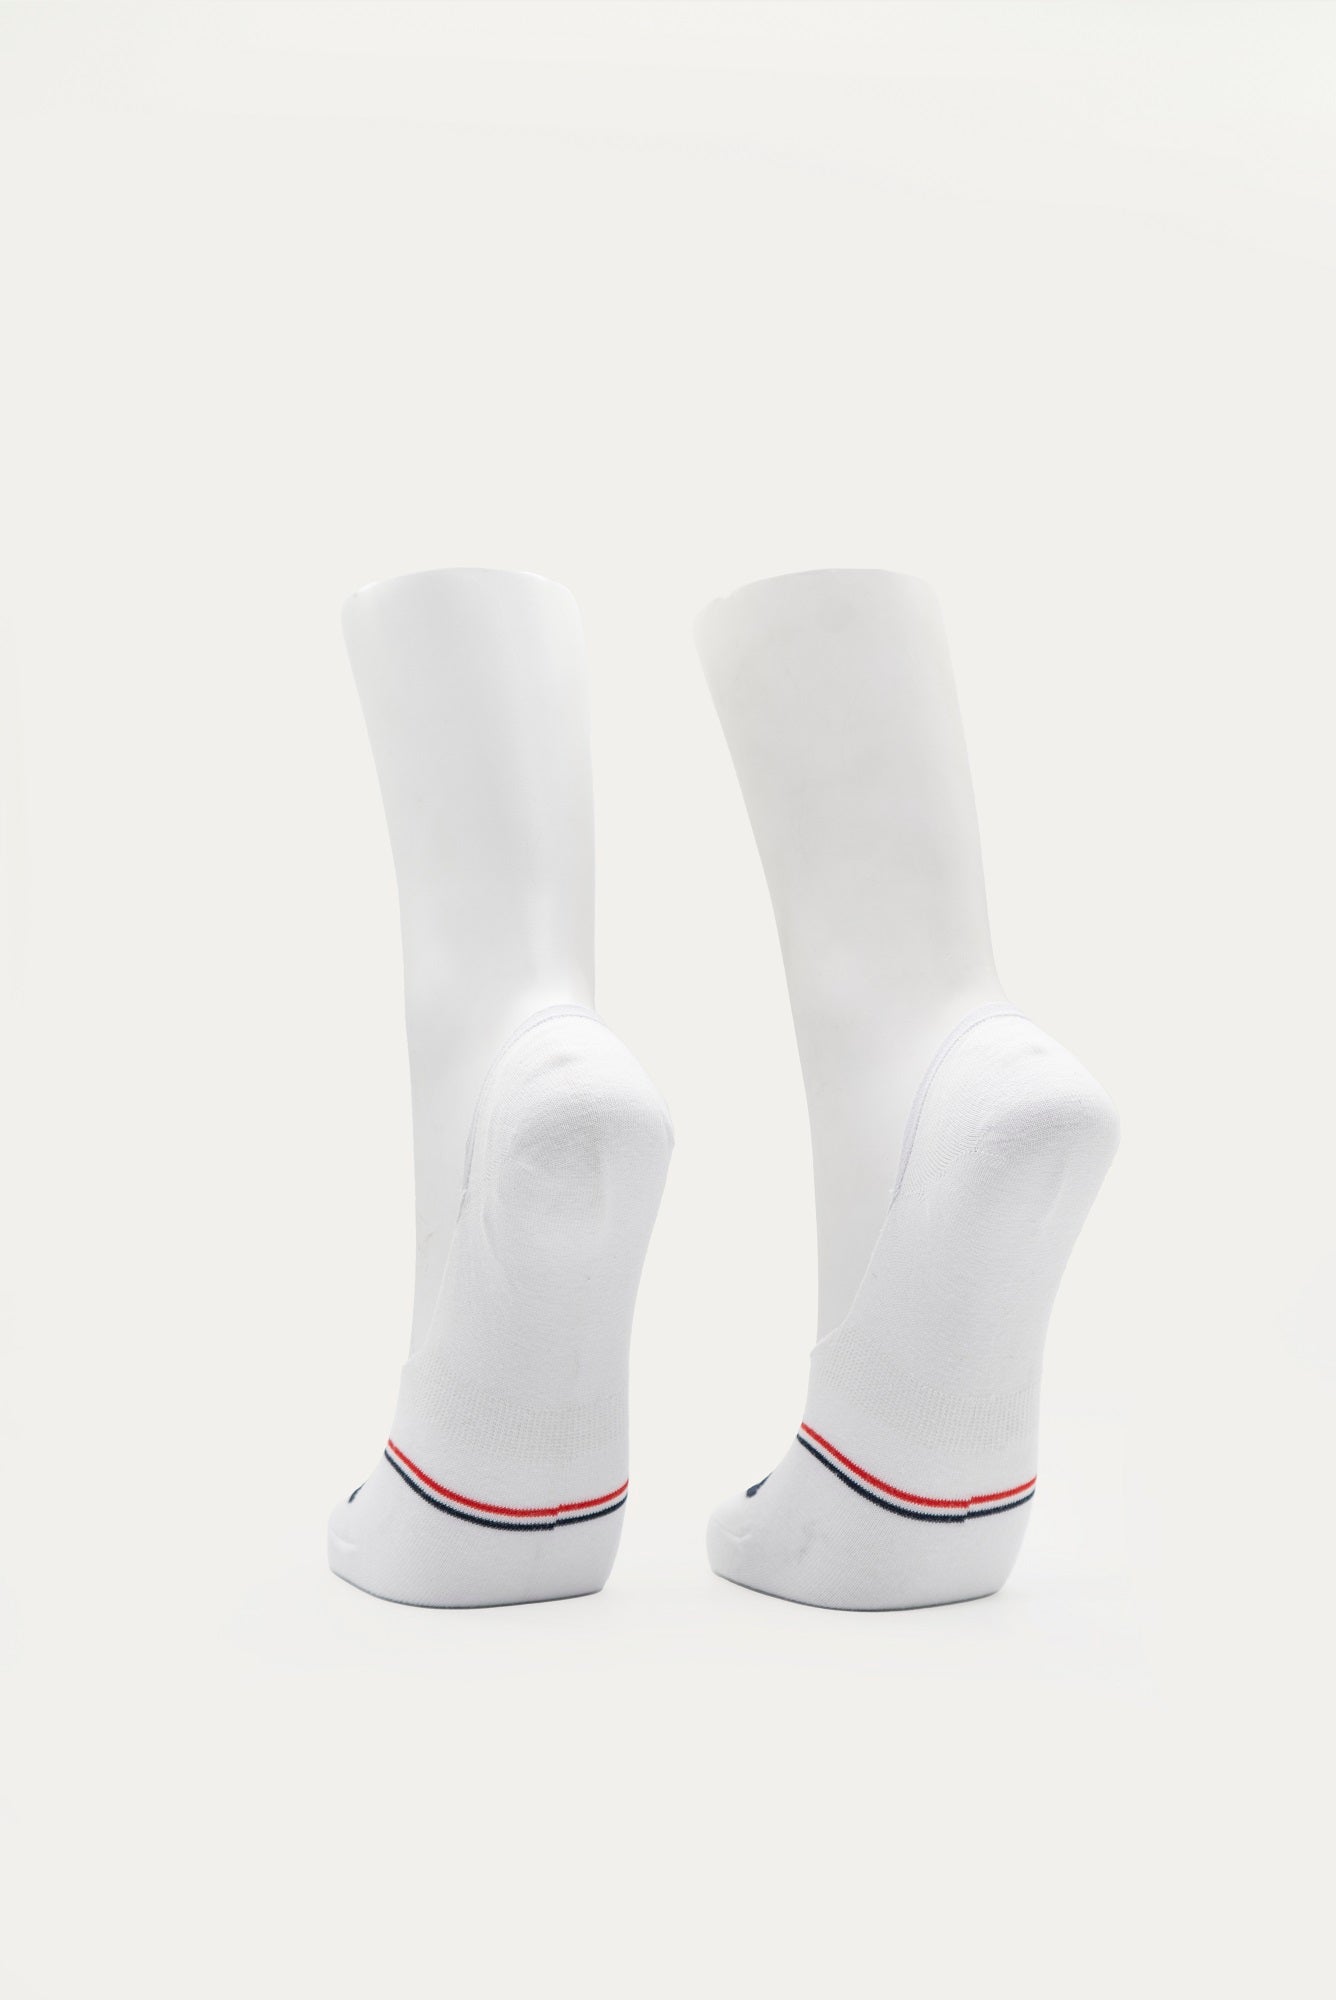 FILA Men's Stallone Secret Socks 2 Pack (Size 6-11)